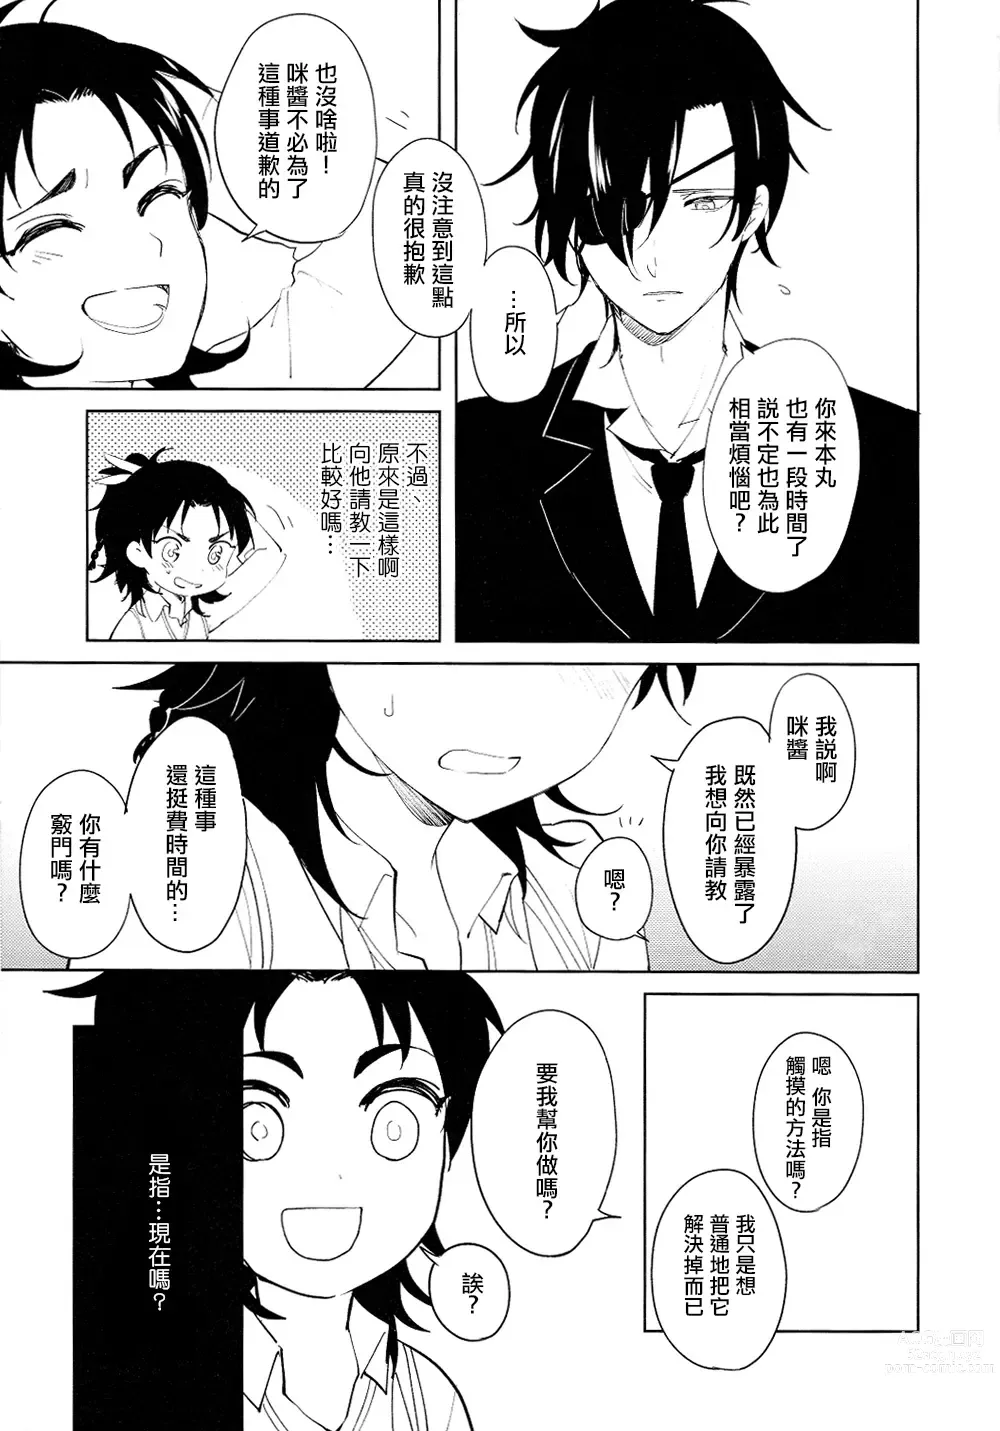 Page 6 of doujinshi 从一个人变成两个人